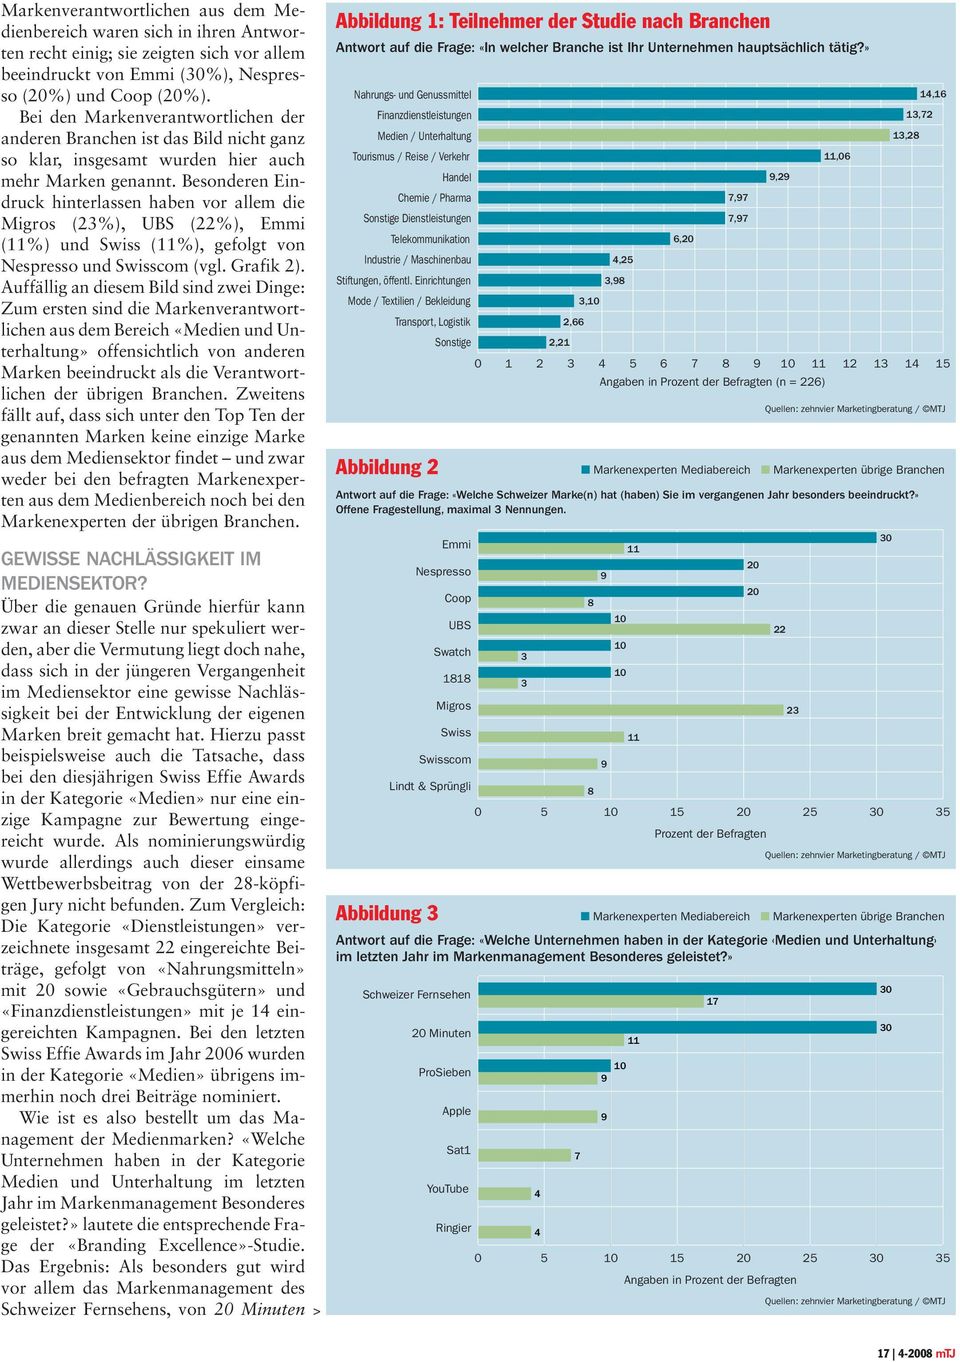 Besonderen Eindruck hinterlassen haben vor allem die Migros (23%), UBS (22%), Emmi (11%) und Swiss (11%), gefolgt von Nespresso und Swisscom (vgl. Grafik 2).